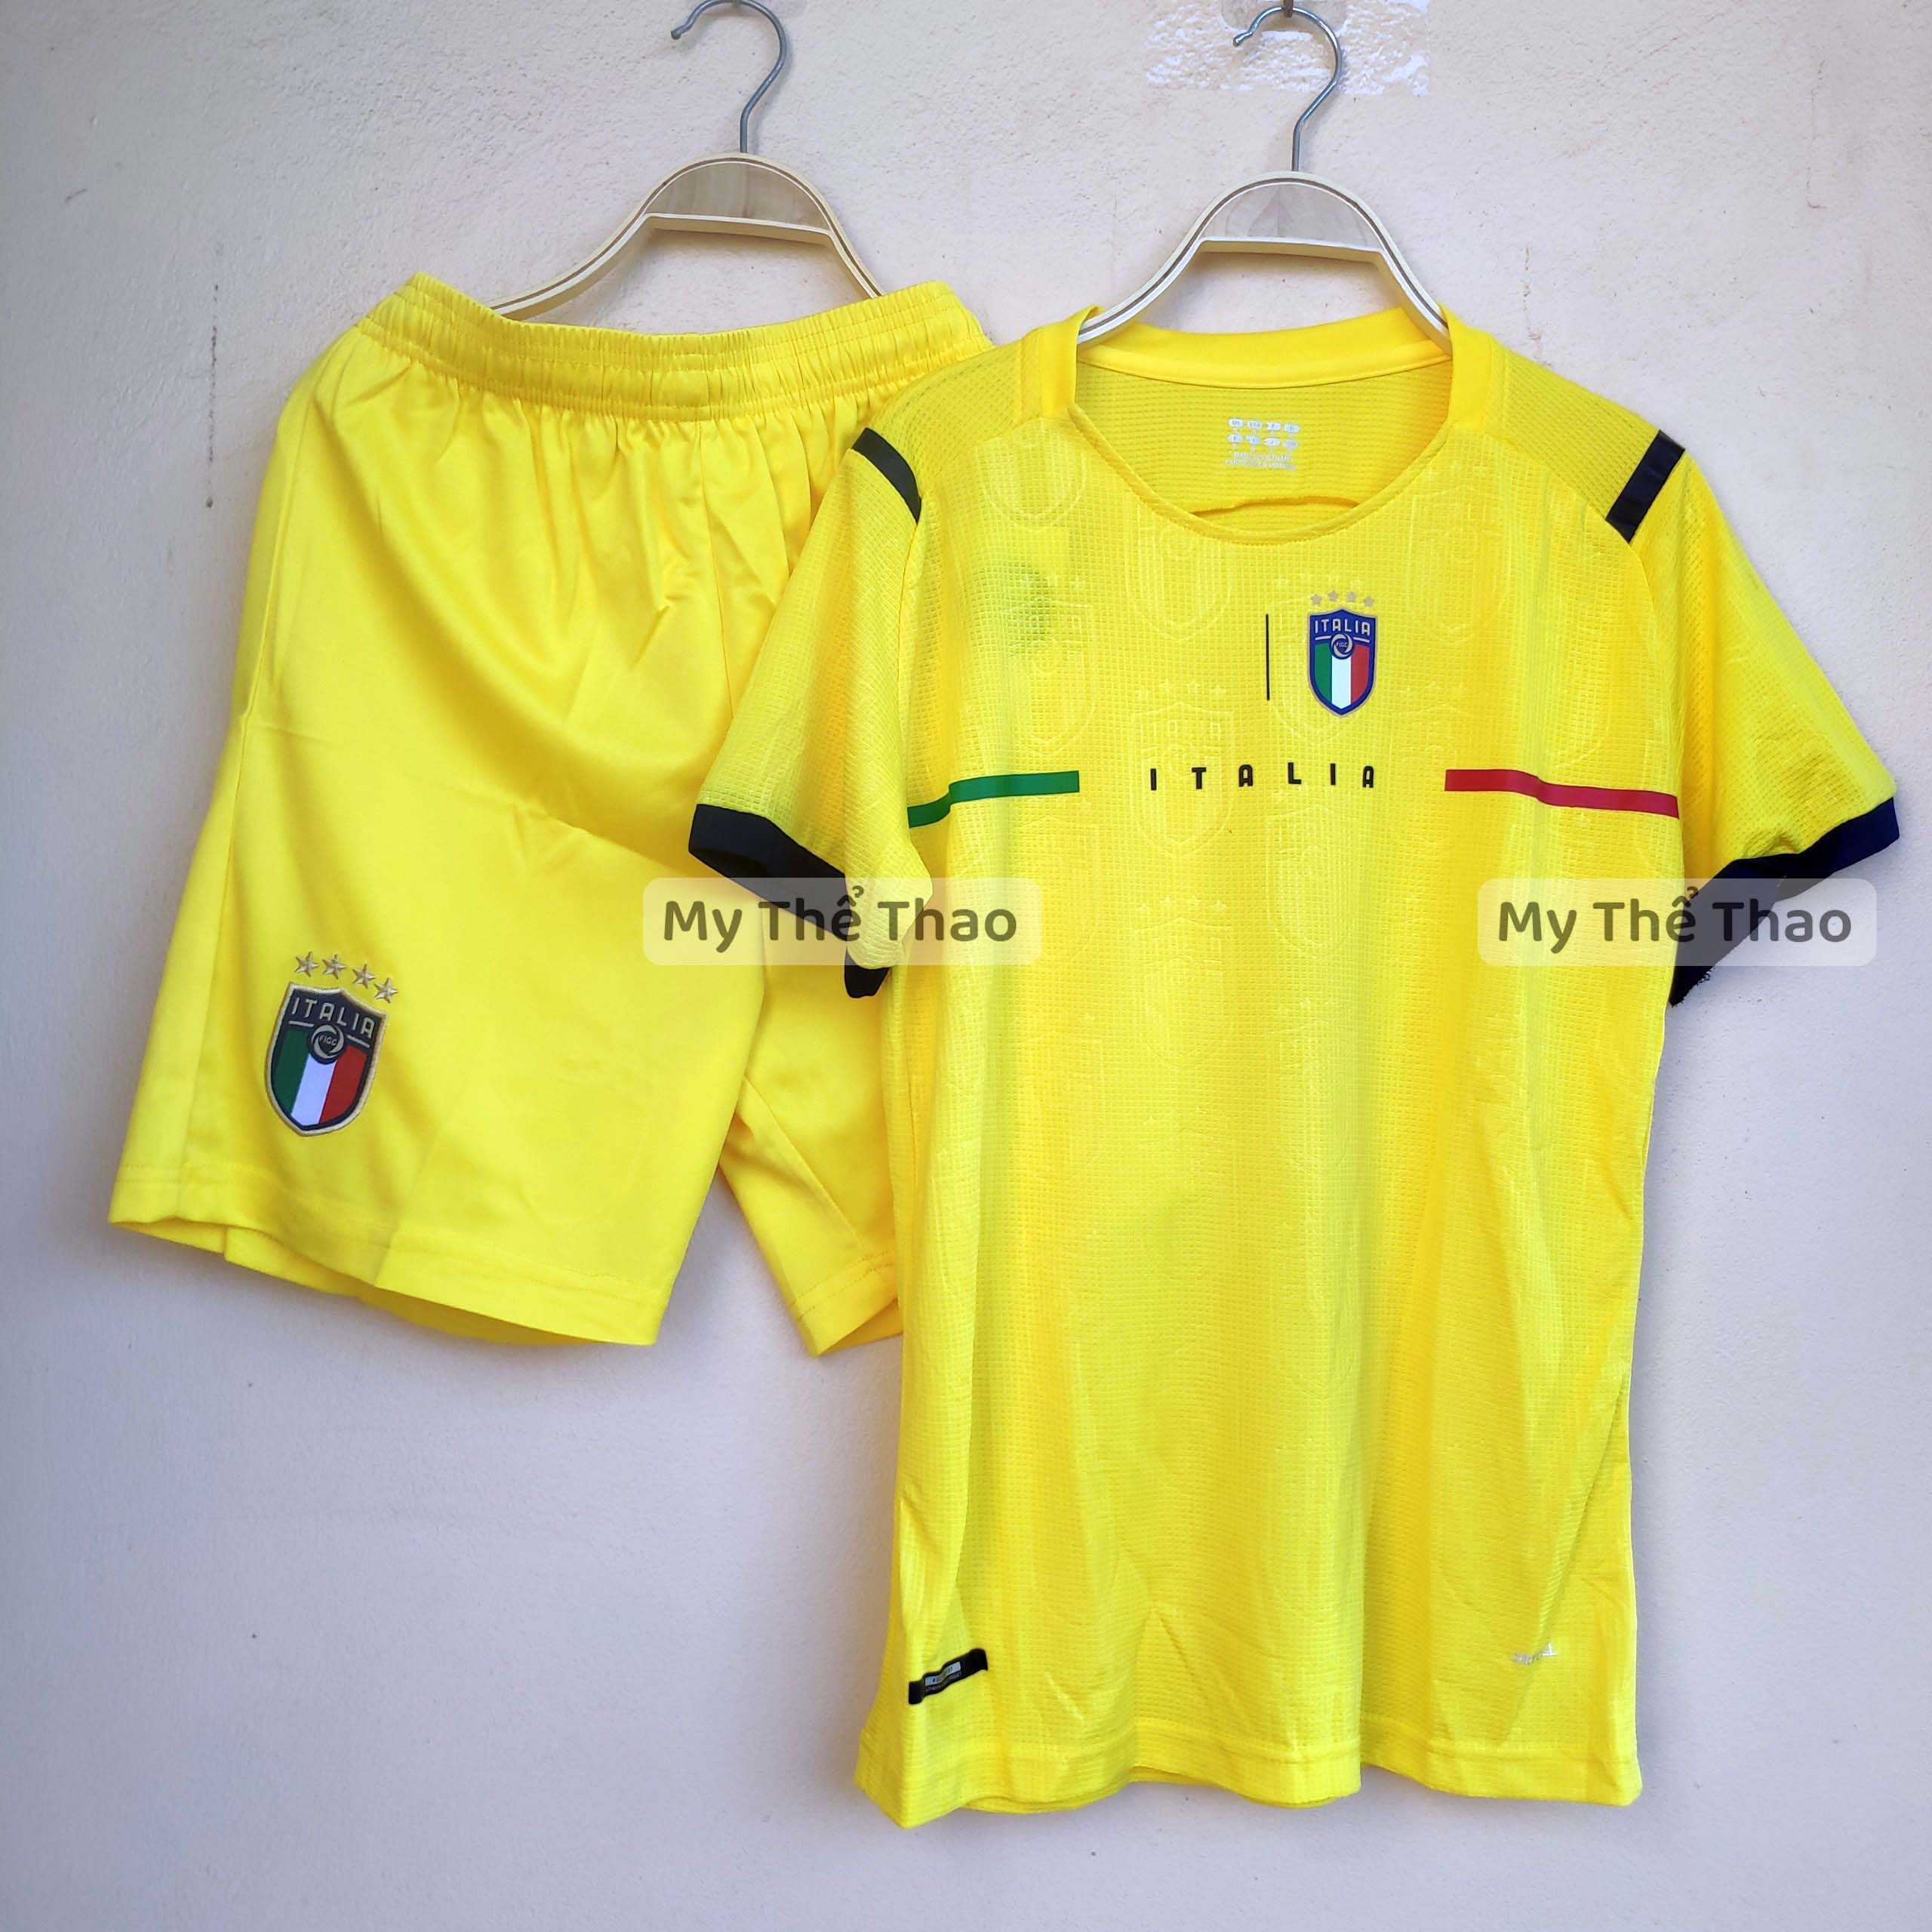 Bộ quần áo đá bóng đội tuyển ý Italy màu vàng mùa 2021 2022 chất gai thái cao cấp 1